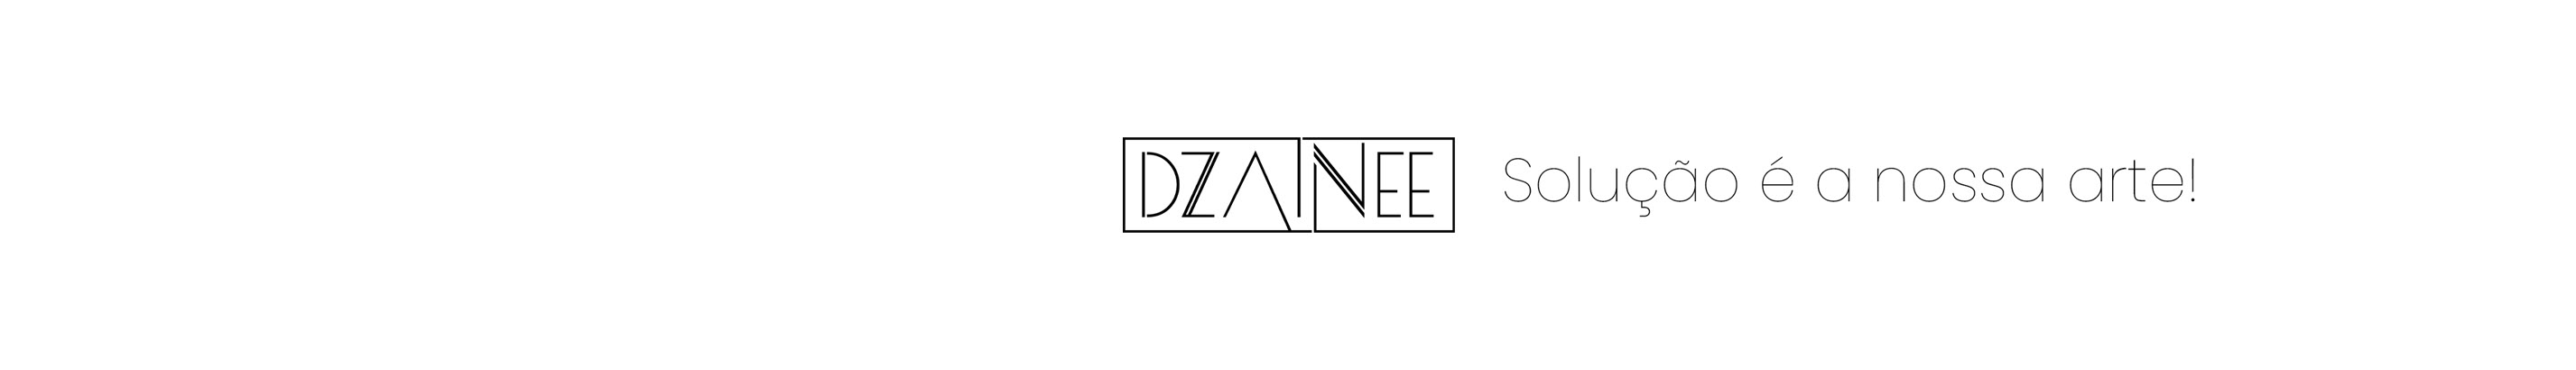 DZAINEE Portfólio's profile banner